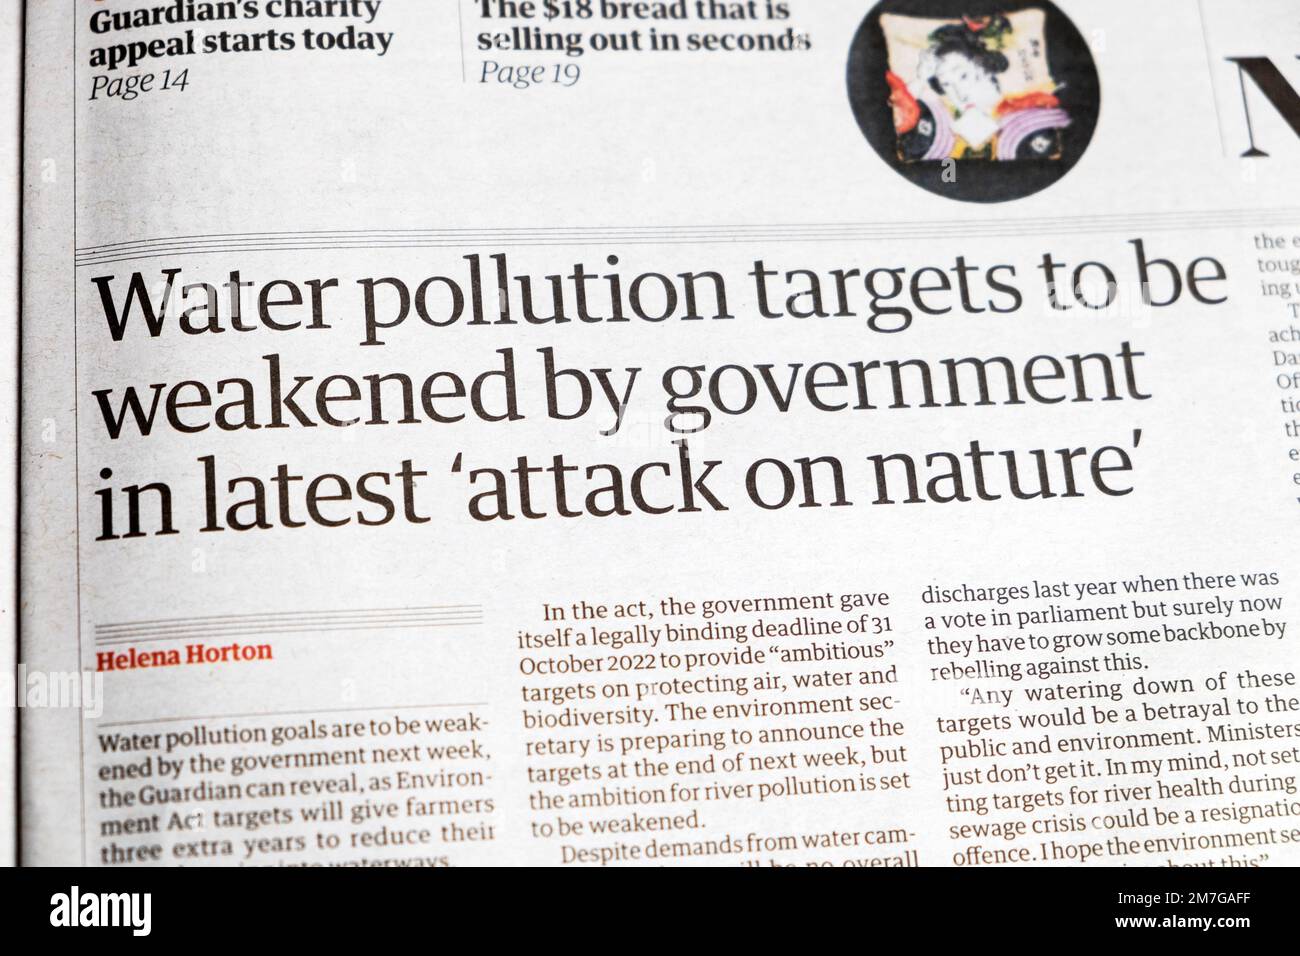 "Les objectifs de pollution de l'eau seront affaiblis par le gouvernement lors de la dernière attaque contre la nature" journal Guardian Headline environnement clipping 10 décembre 2022 Royaume-Uni Banque D'Images